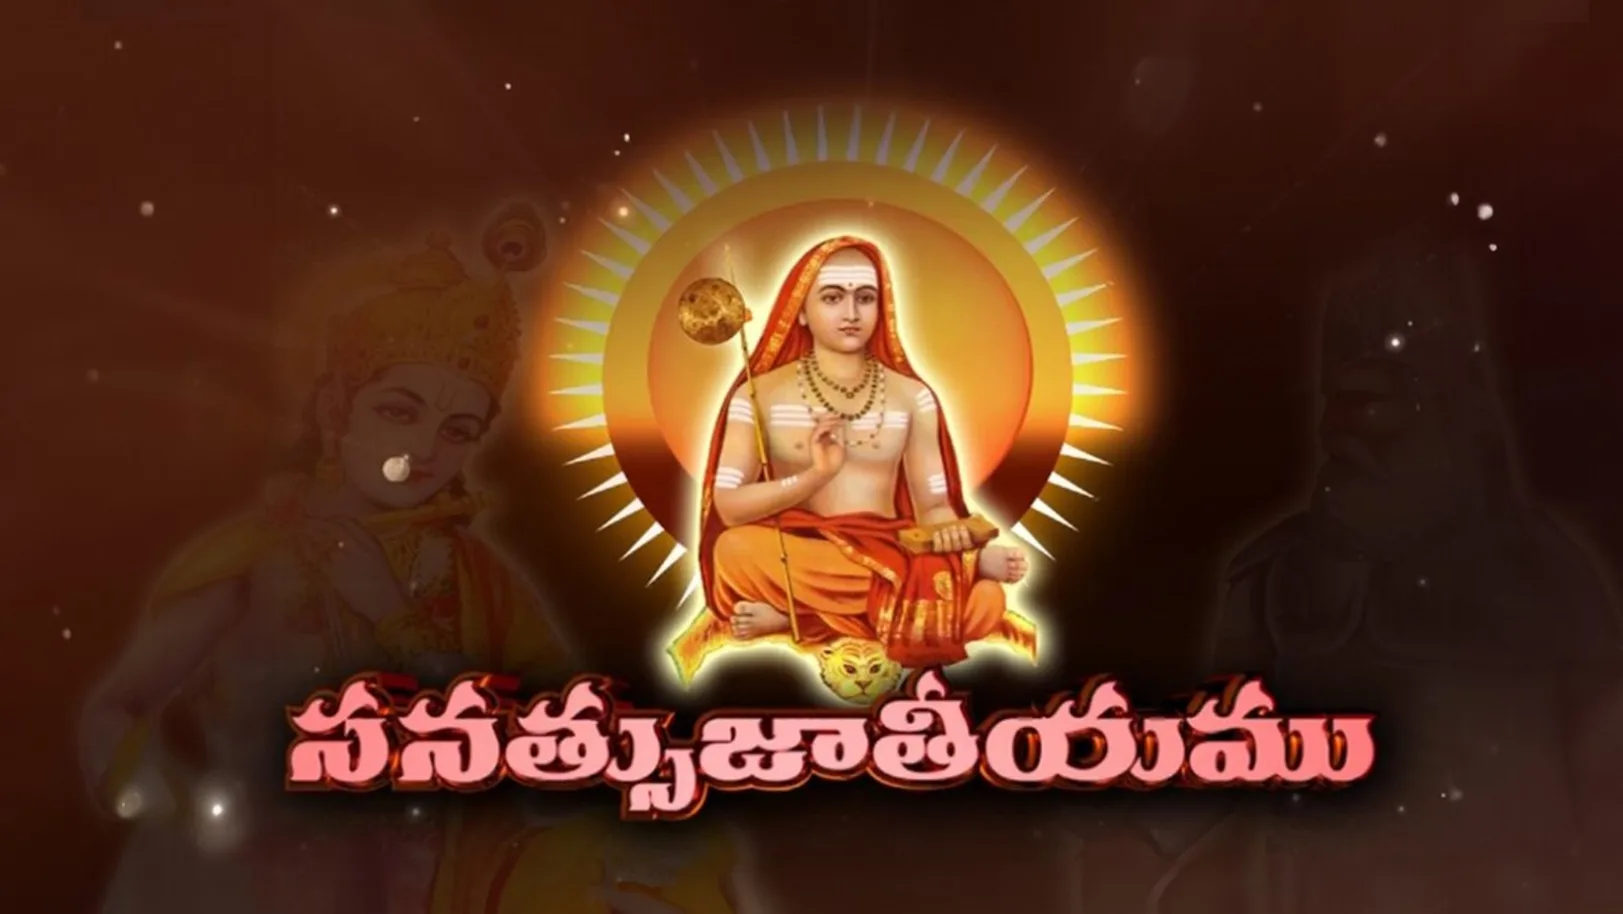 Sanatsu Jateeyam Streaming Now On Aastha Telugu